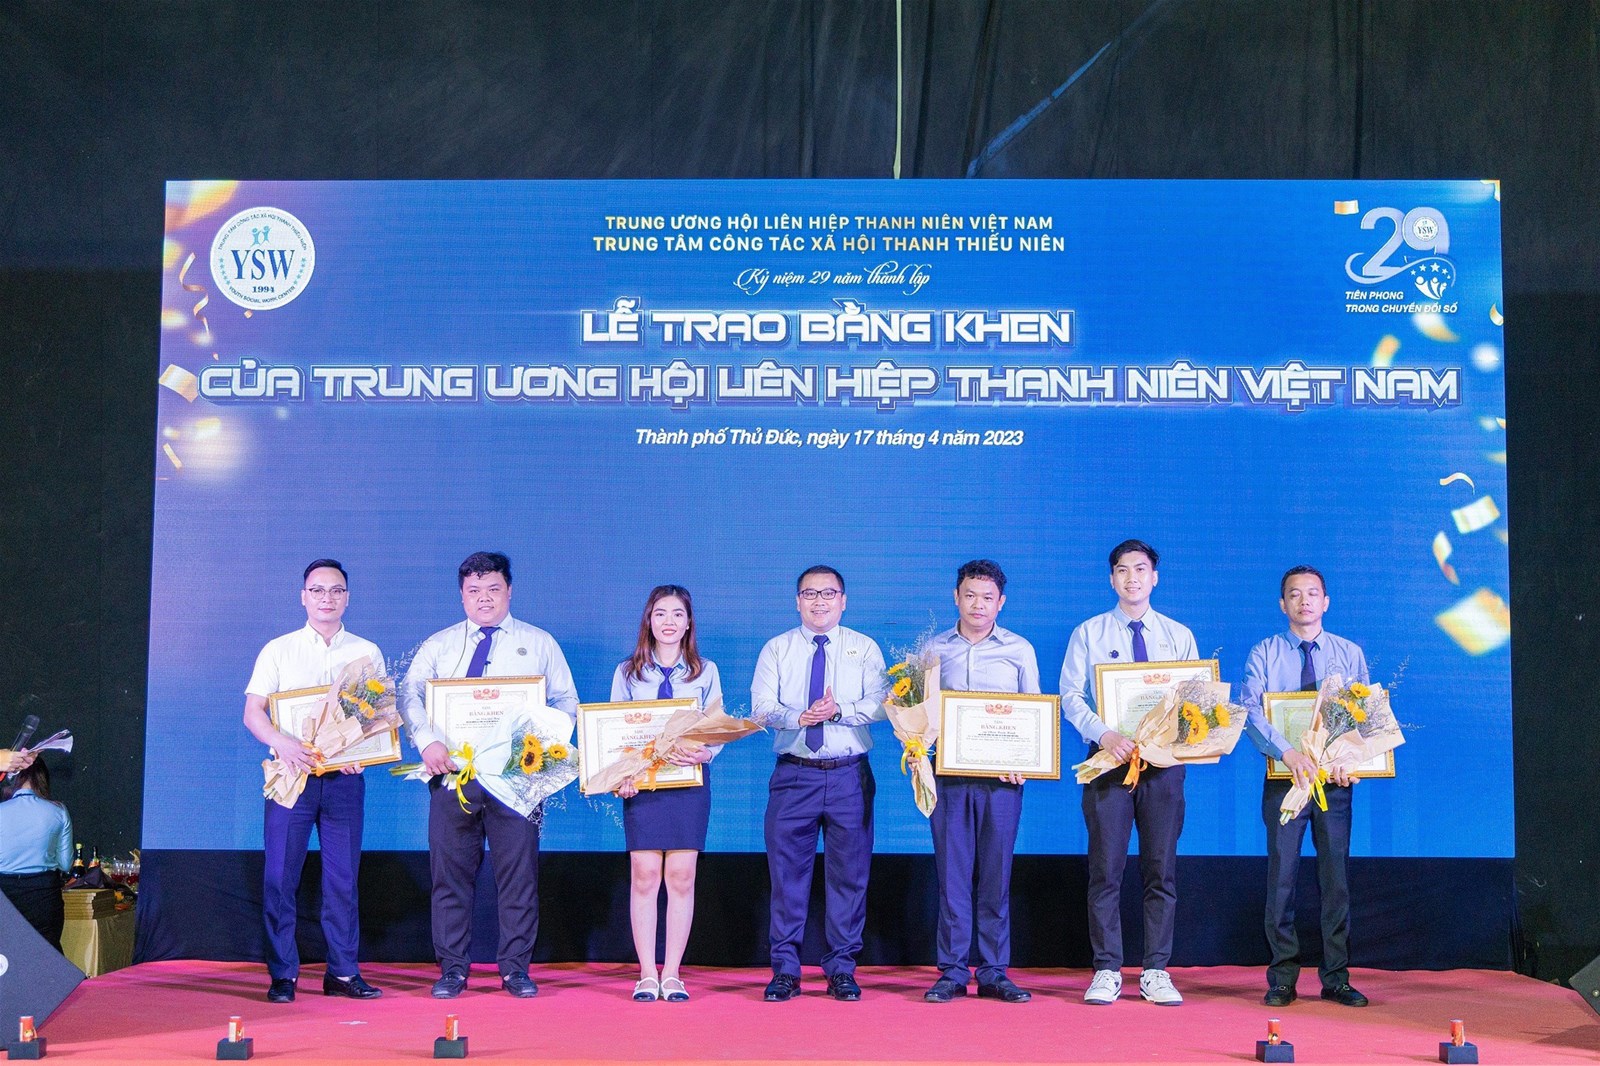 Trung tâm Công tác Xã hội Thanh thiếu niên Việt Nam kỷ niệm 29 năm thành lập